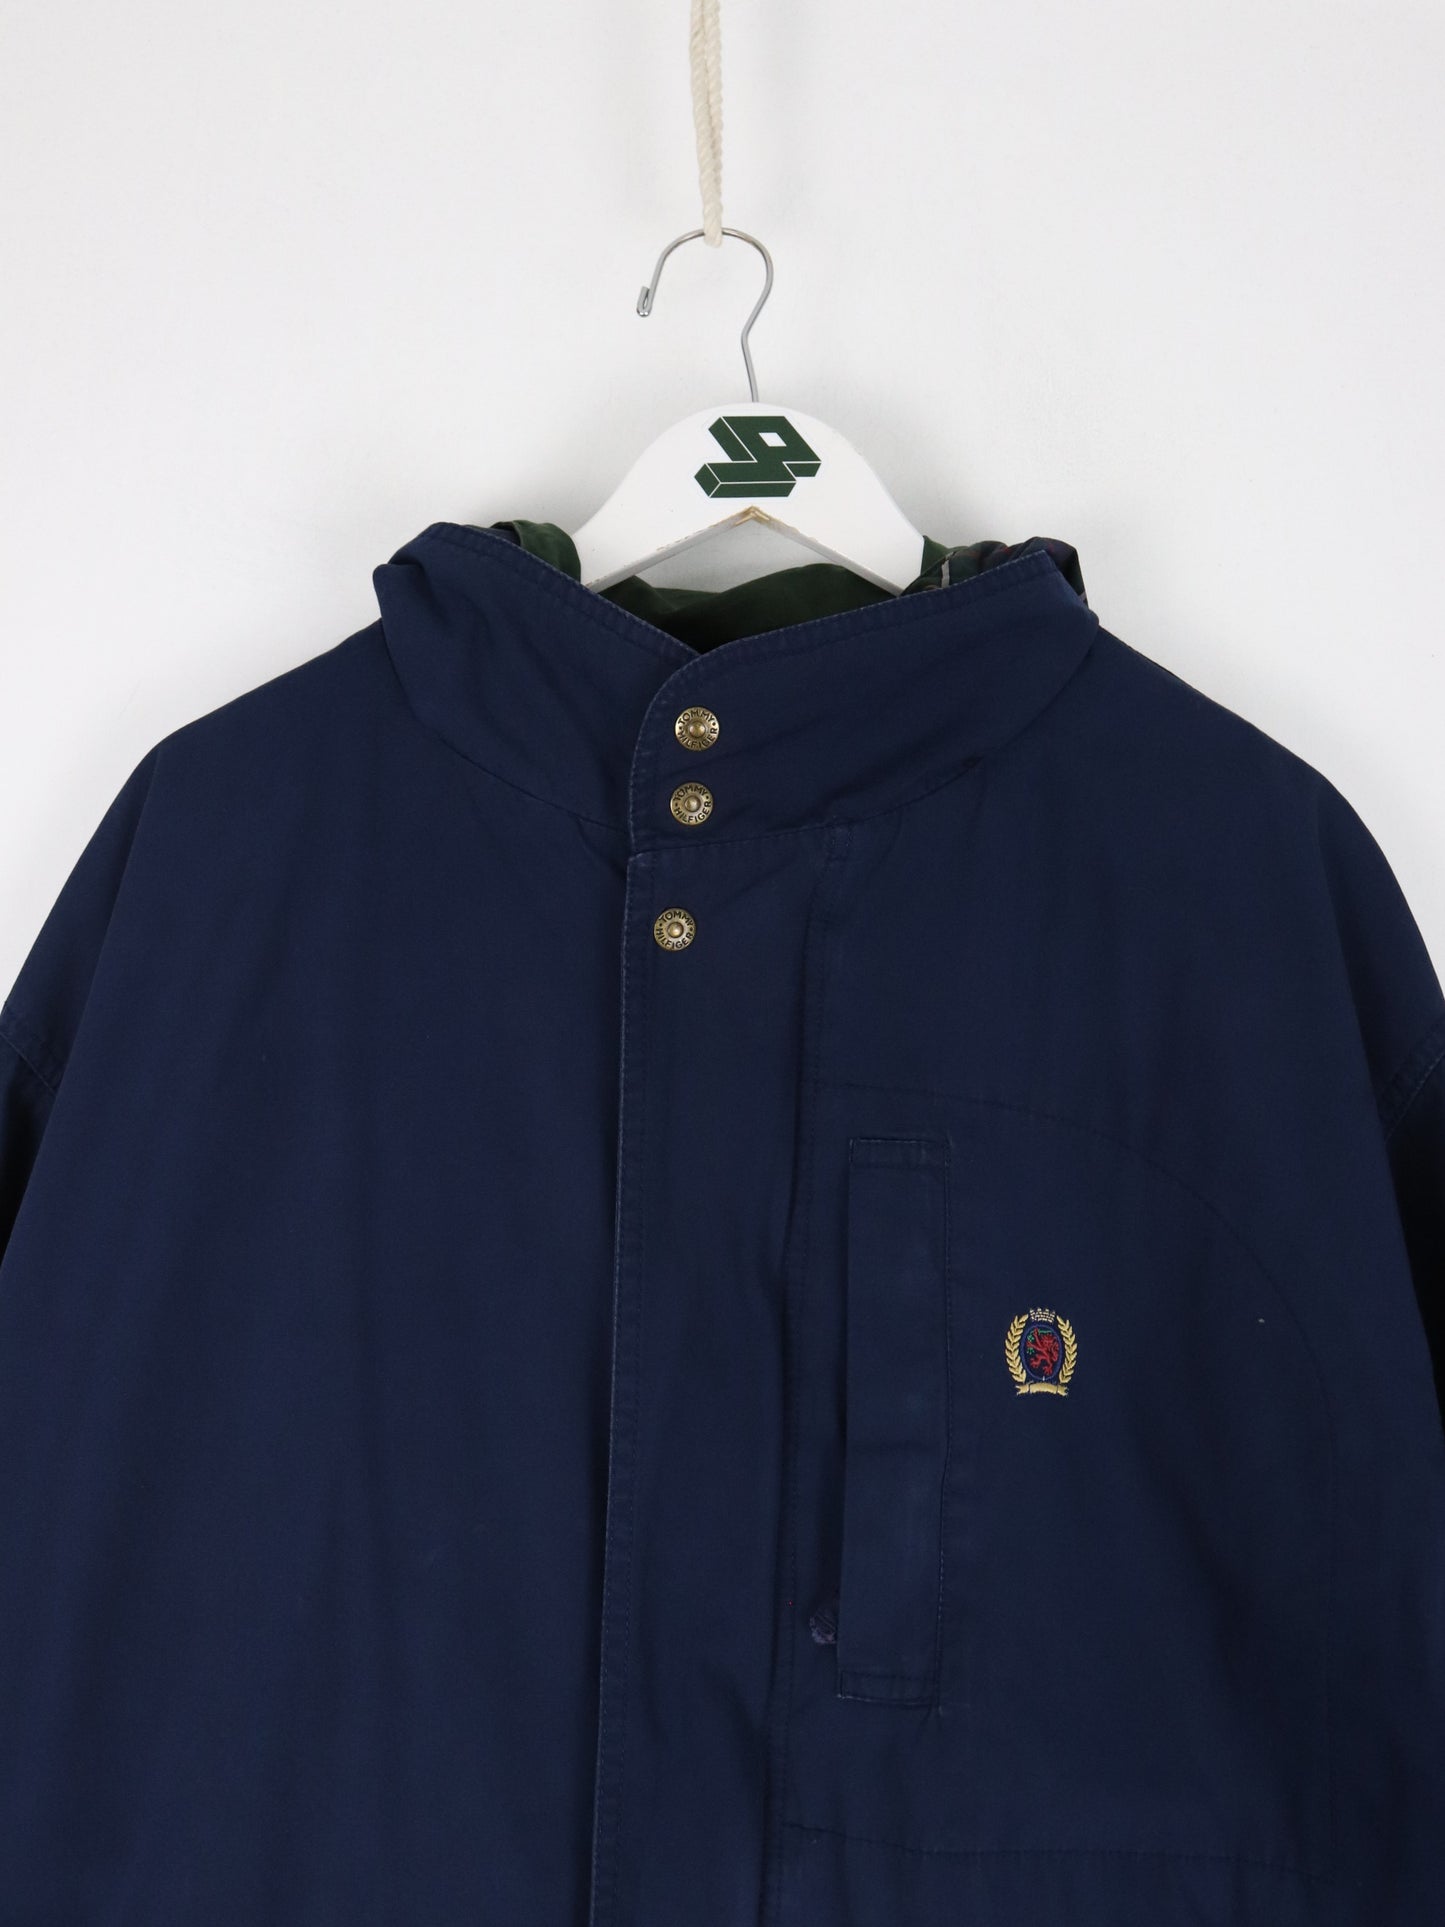 Vintage Tommy Hilfiger Jacket Mens Large Blue Parka Coat 90s